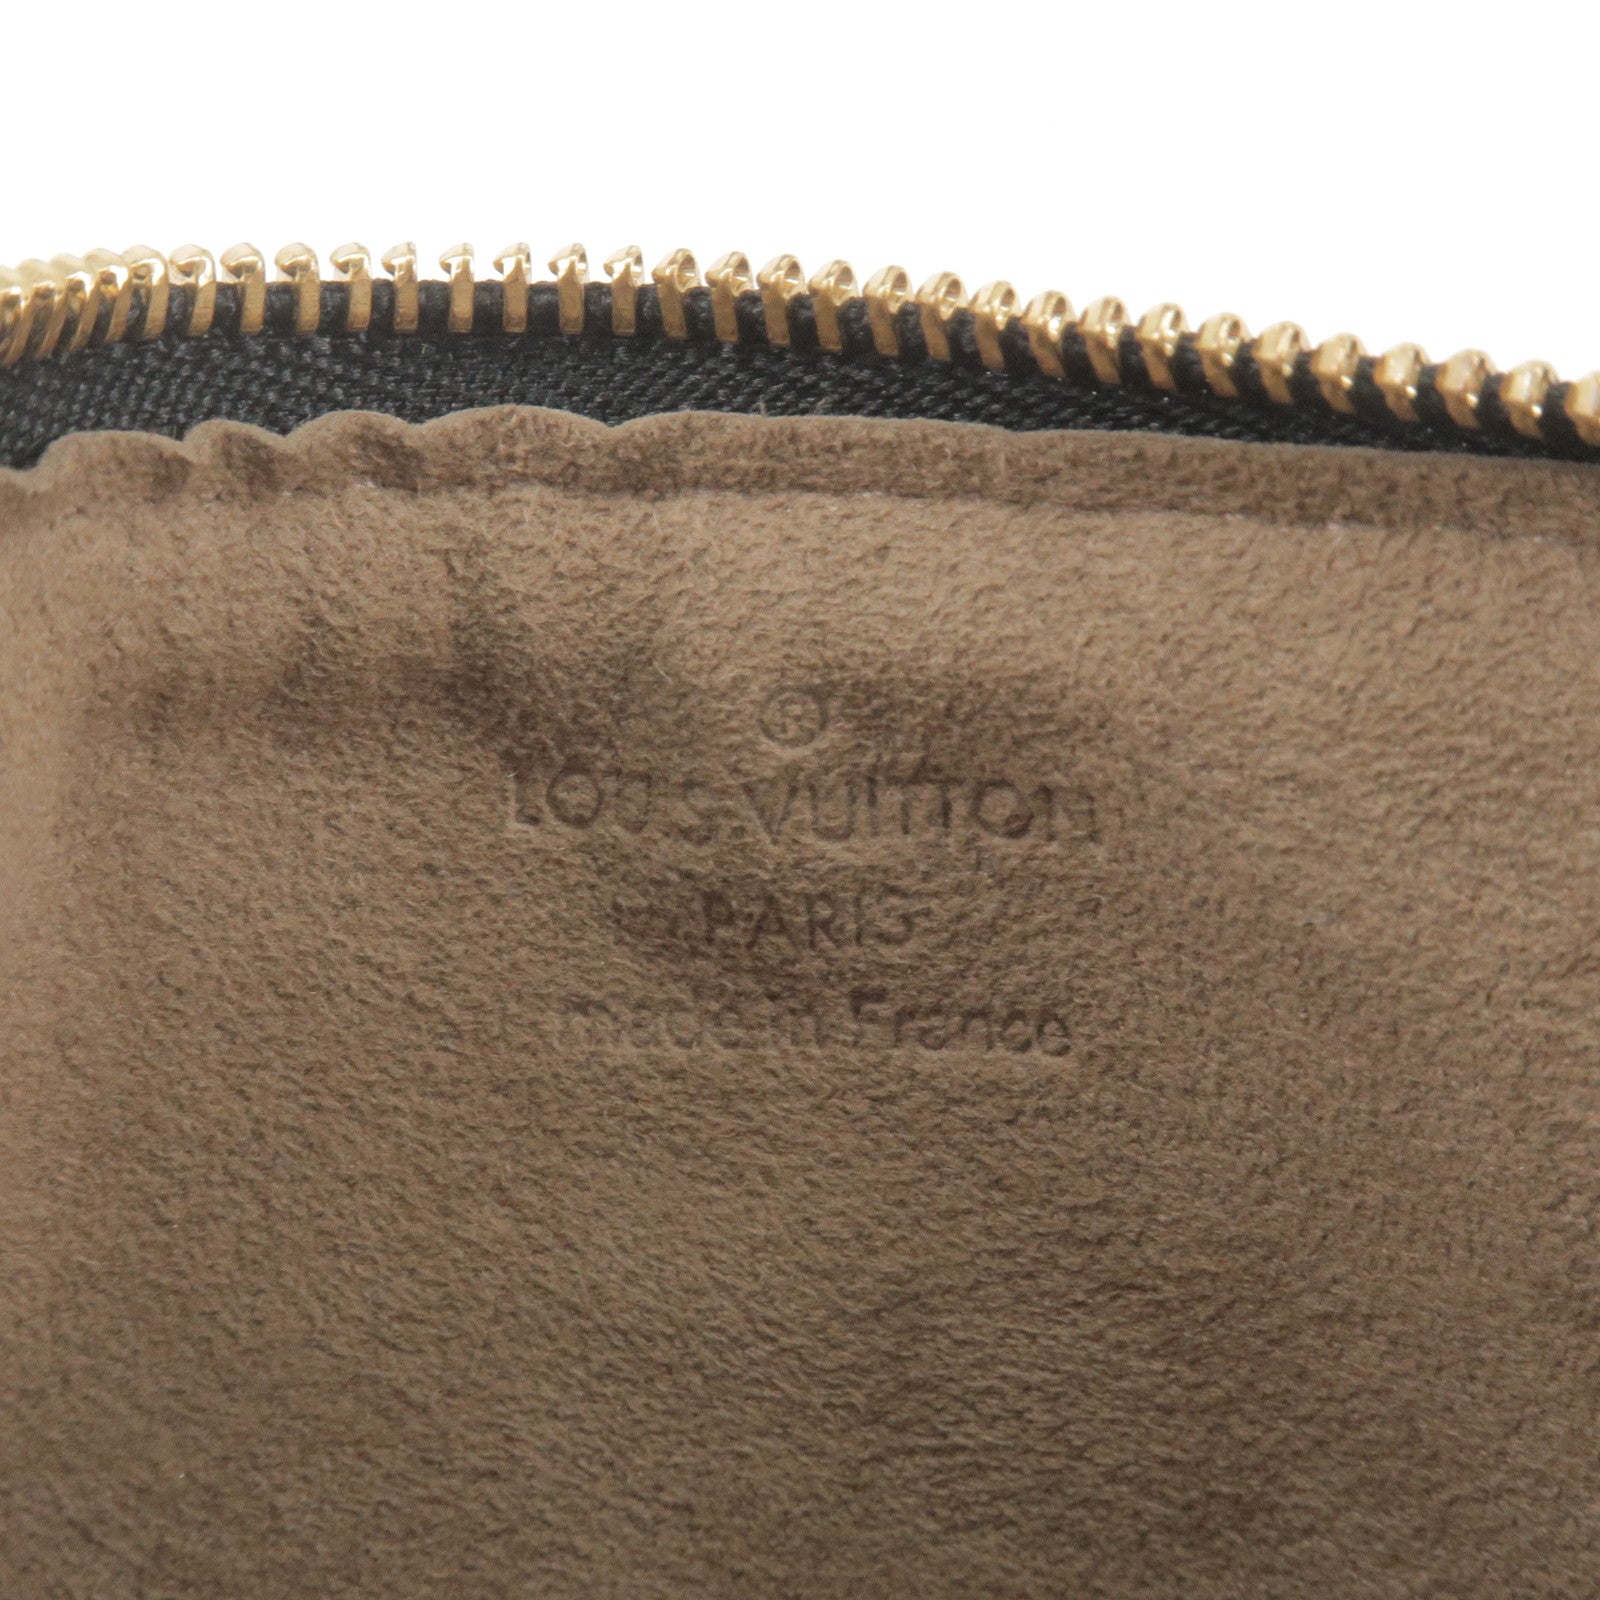 Louis-Vuitton-Monogram-Multi-Color-Pochette-MM-Noir-M60031 – dct-ep_vintage  luxury Store